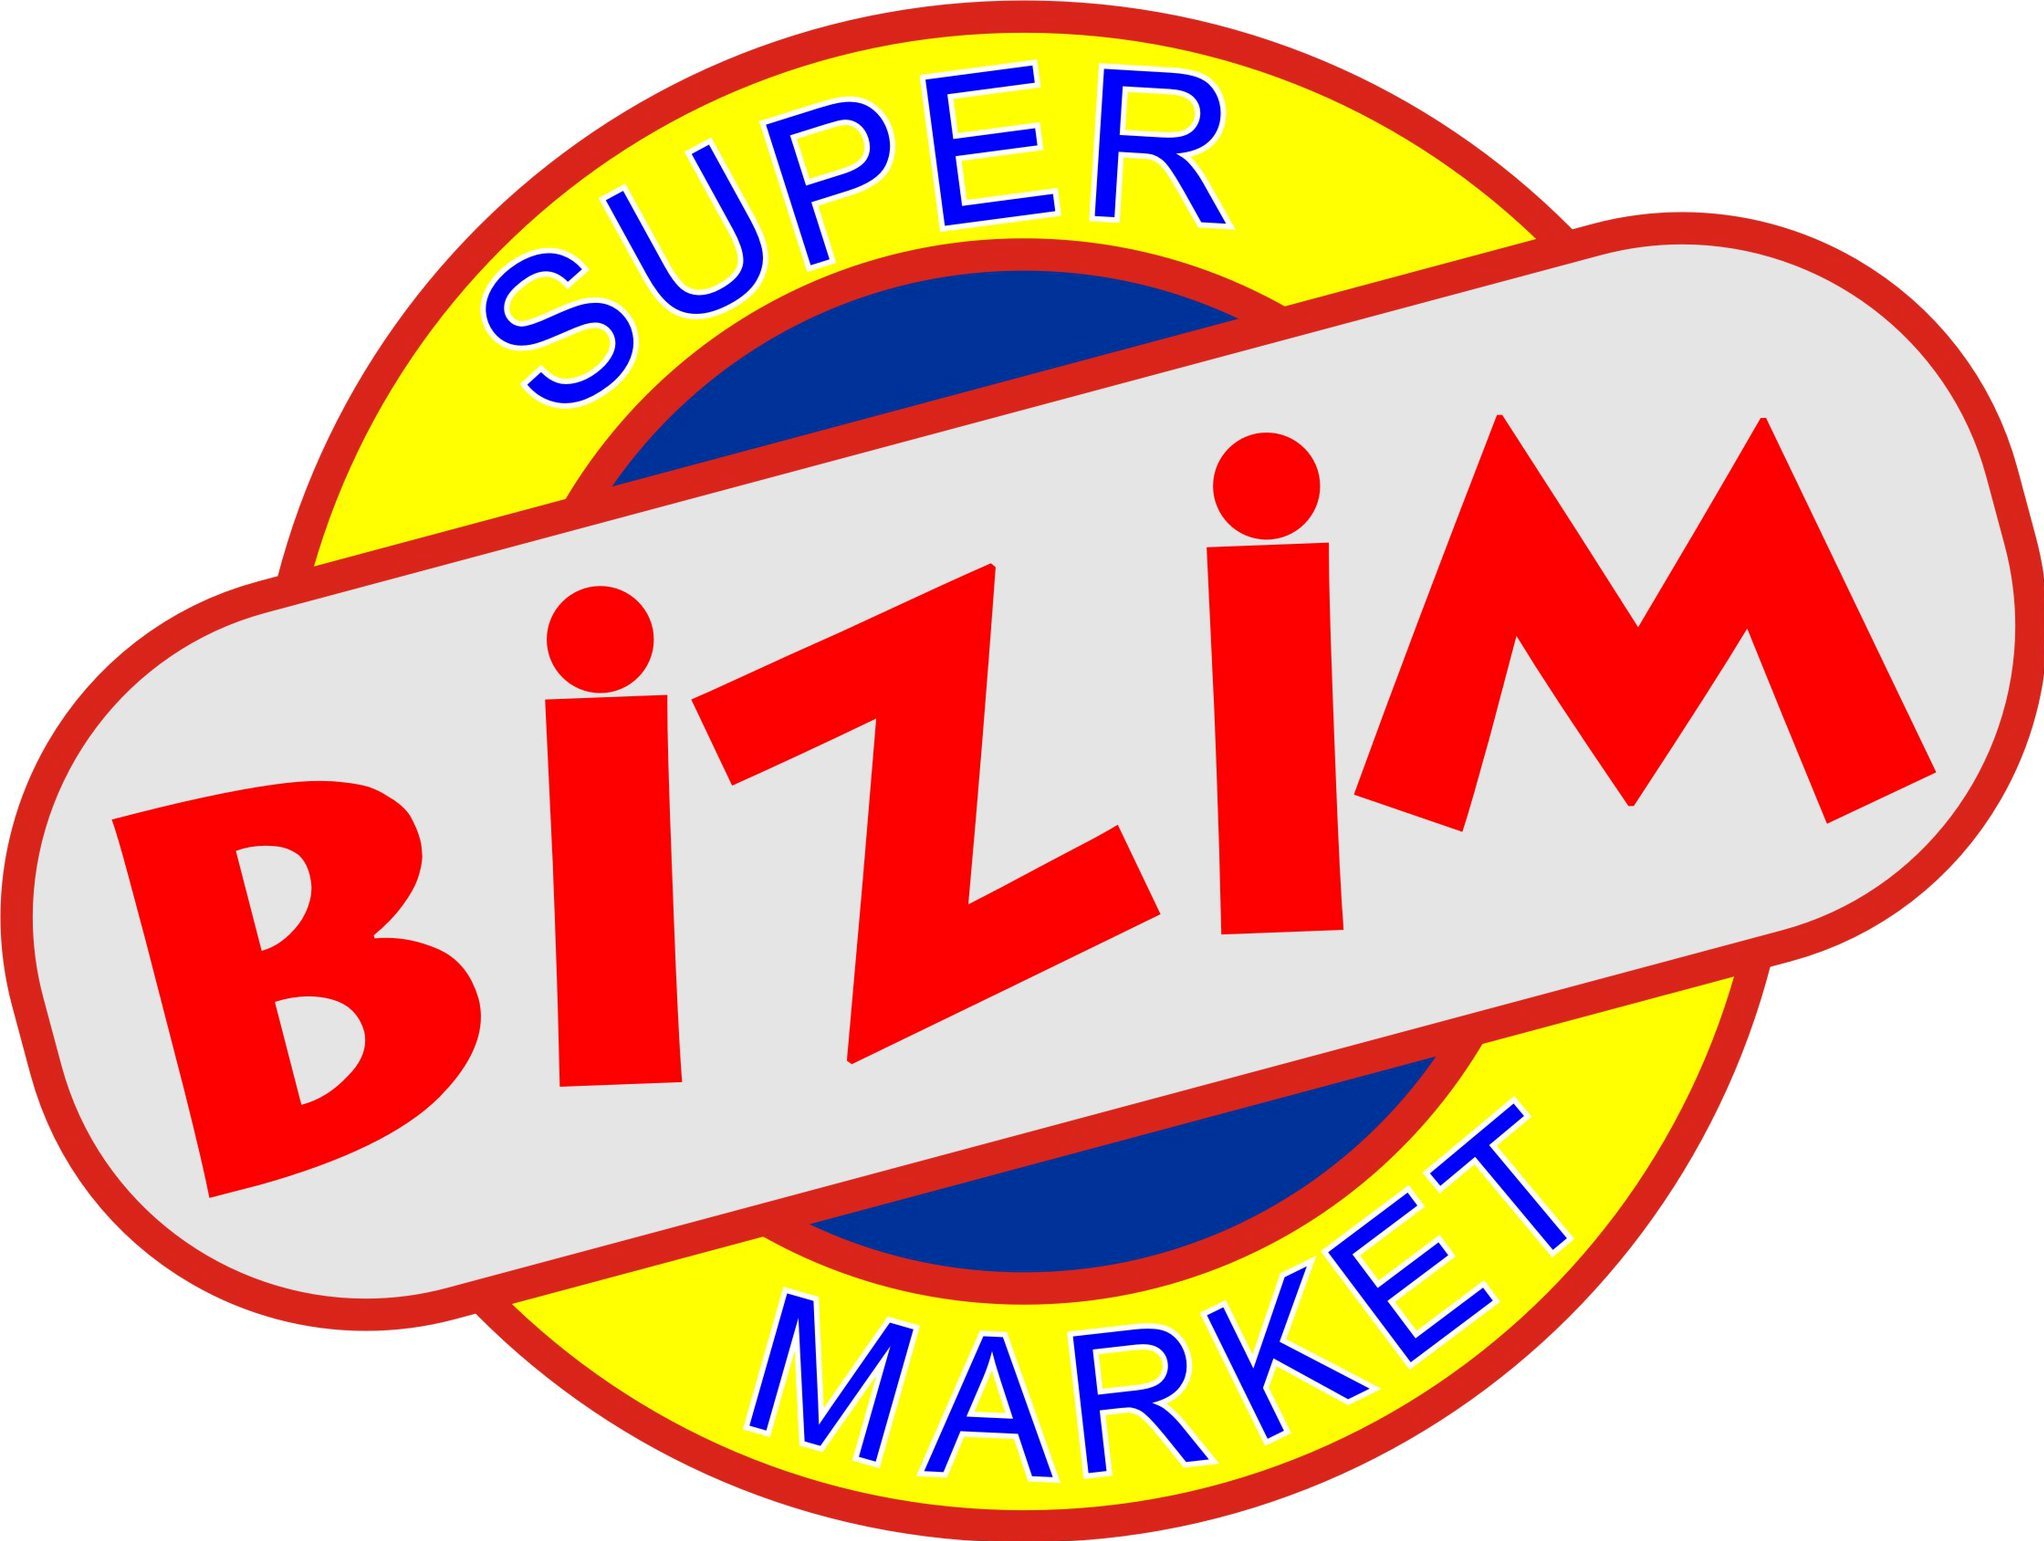 Bizim GmbH, Sebaldsbrücker Heerstraße 53 in Bremen